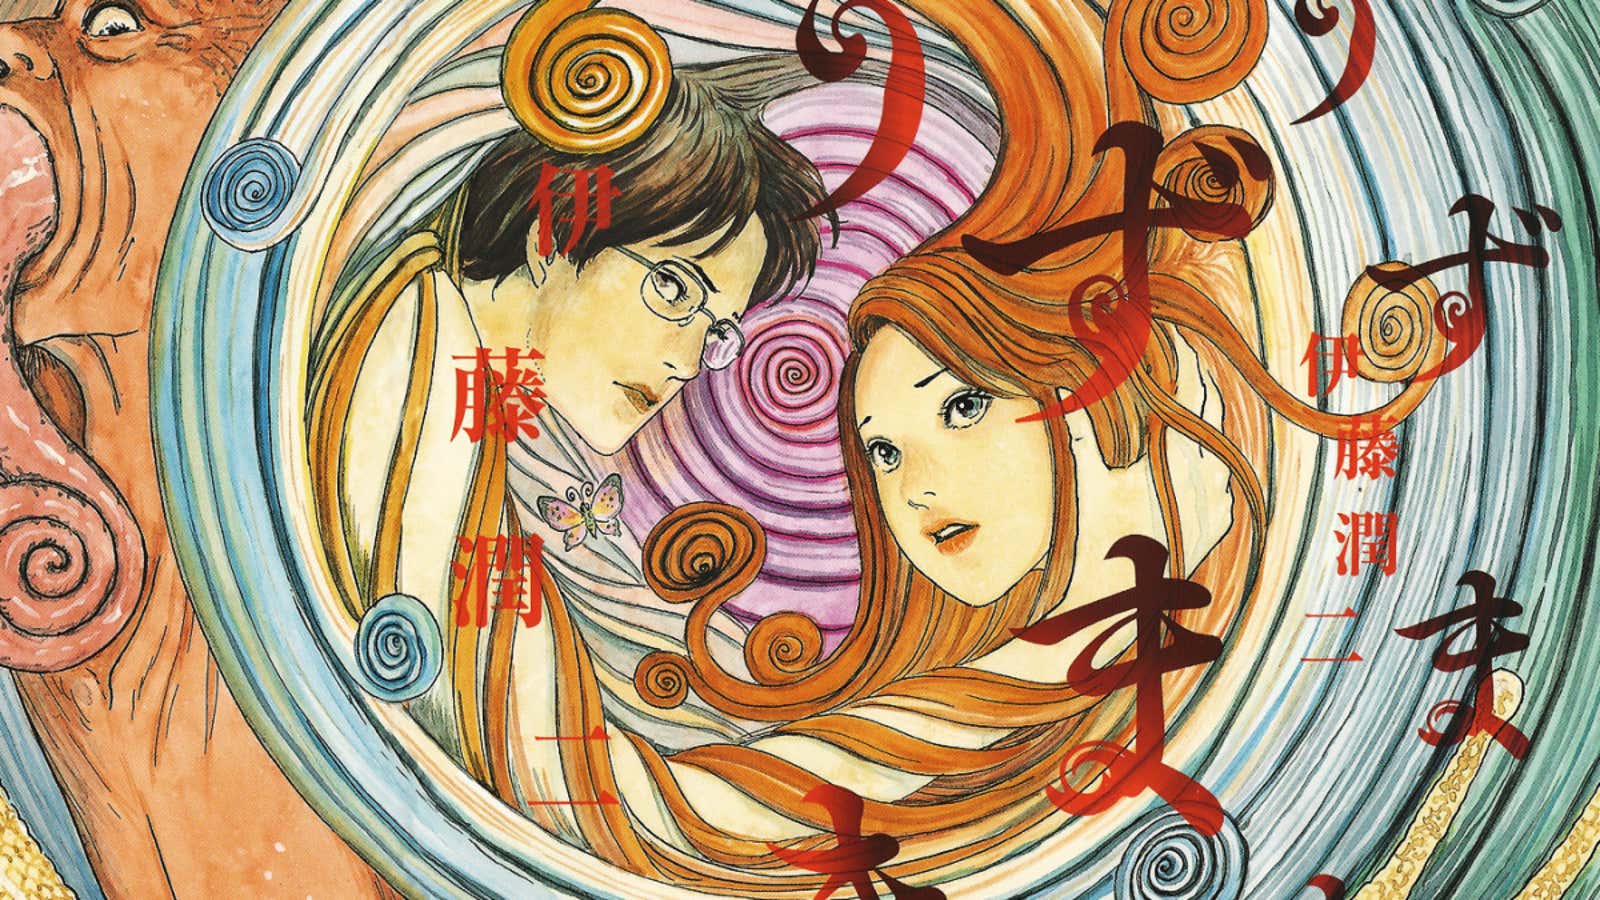 La portada de Uzumaki, una de las obras maestras de Junji Ito.